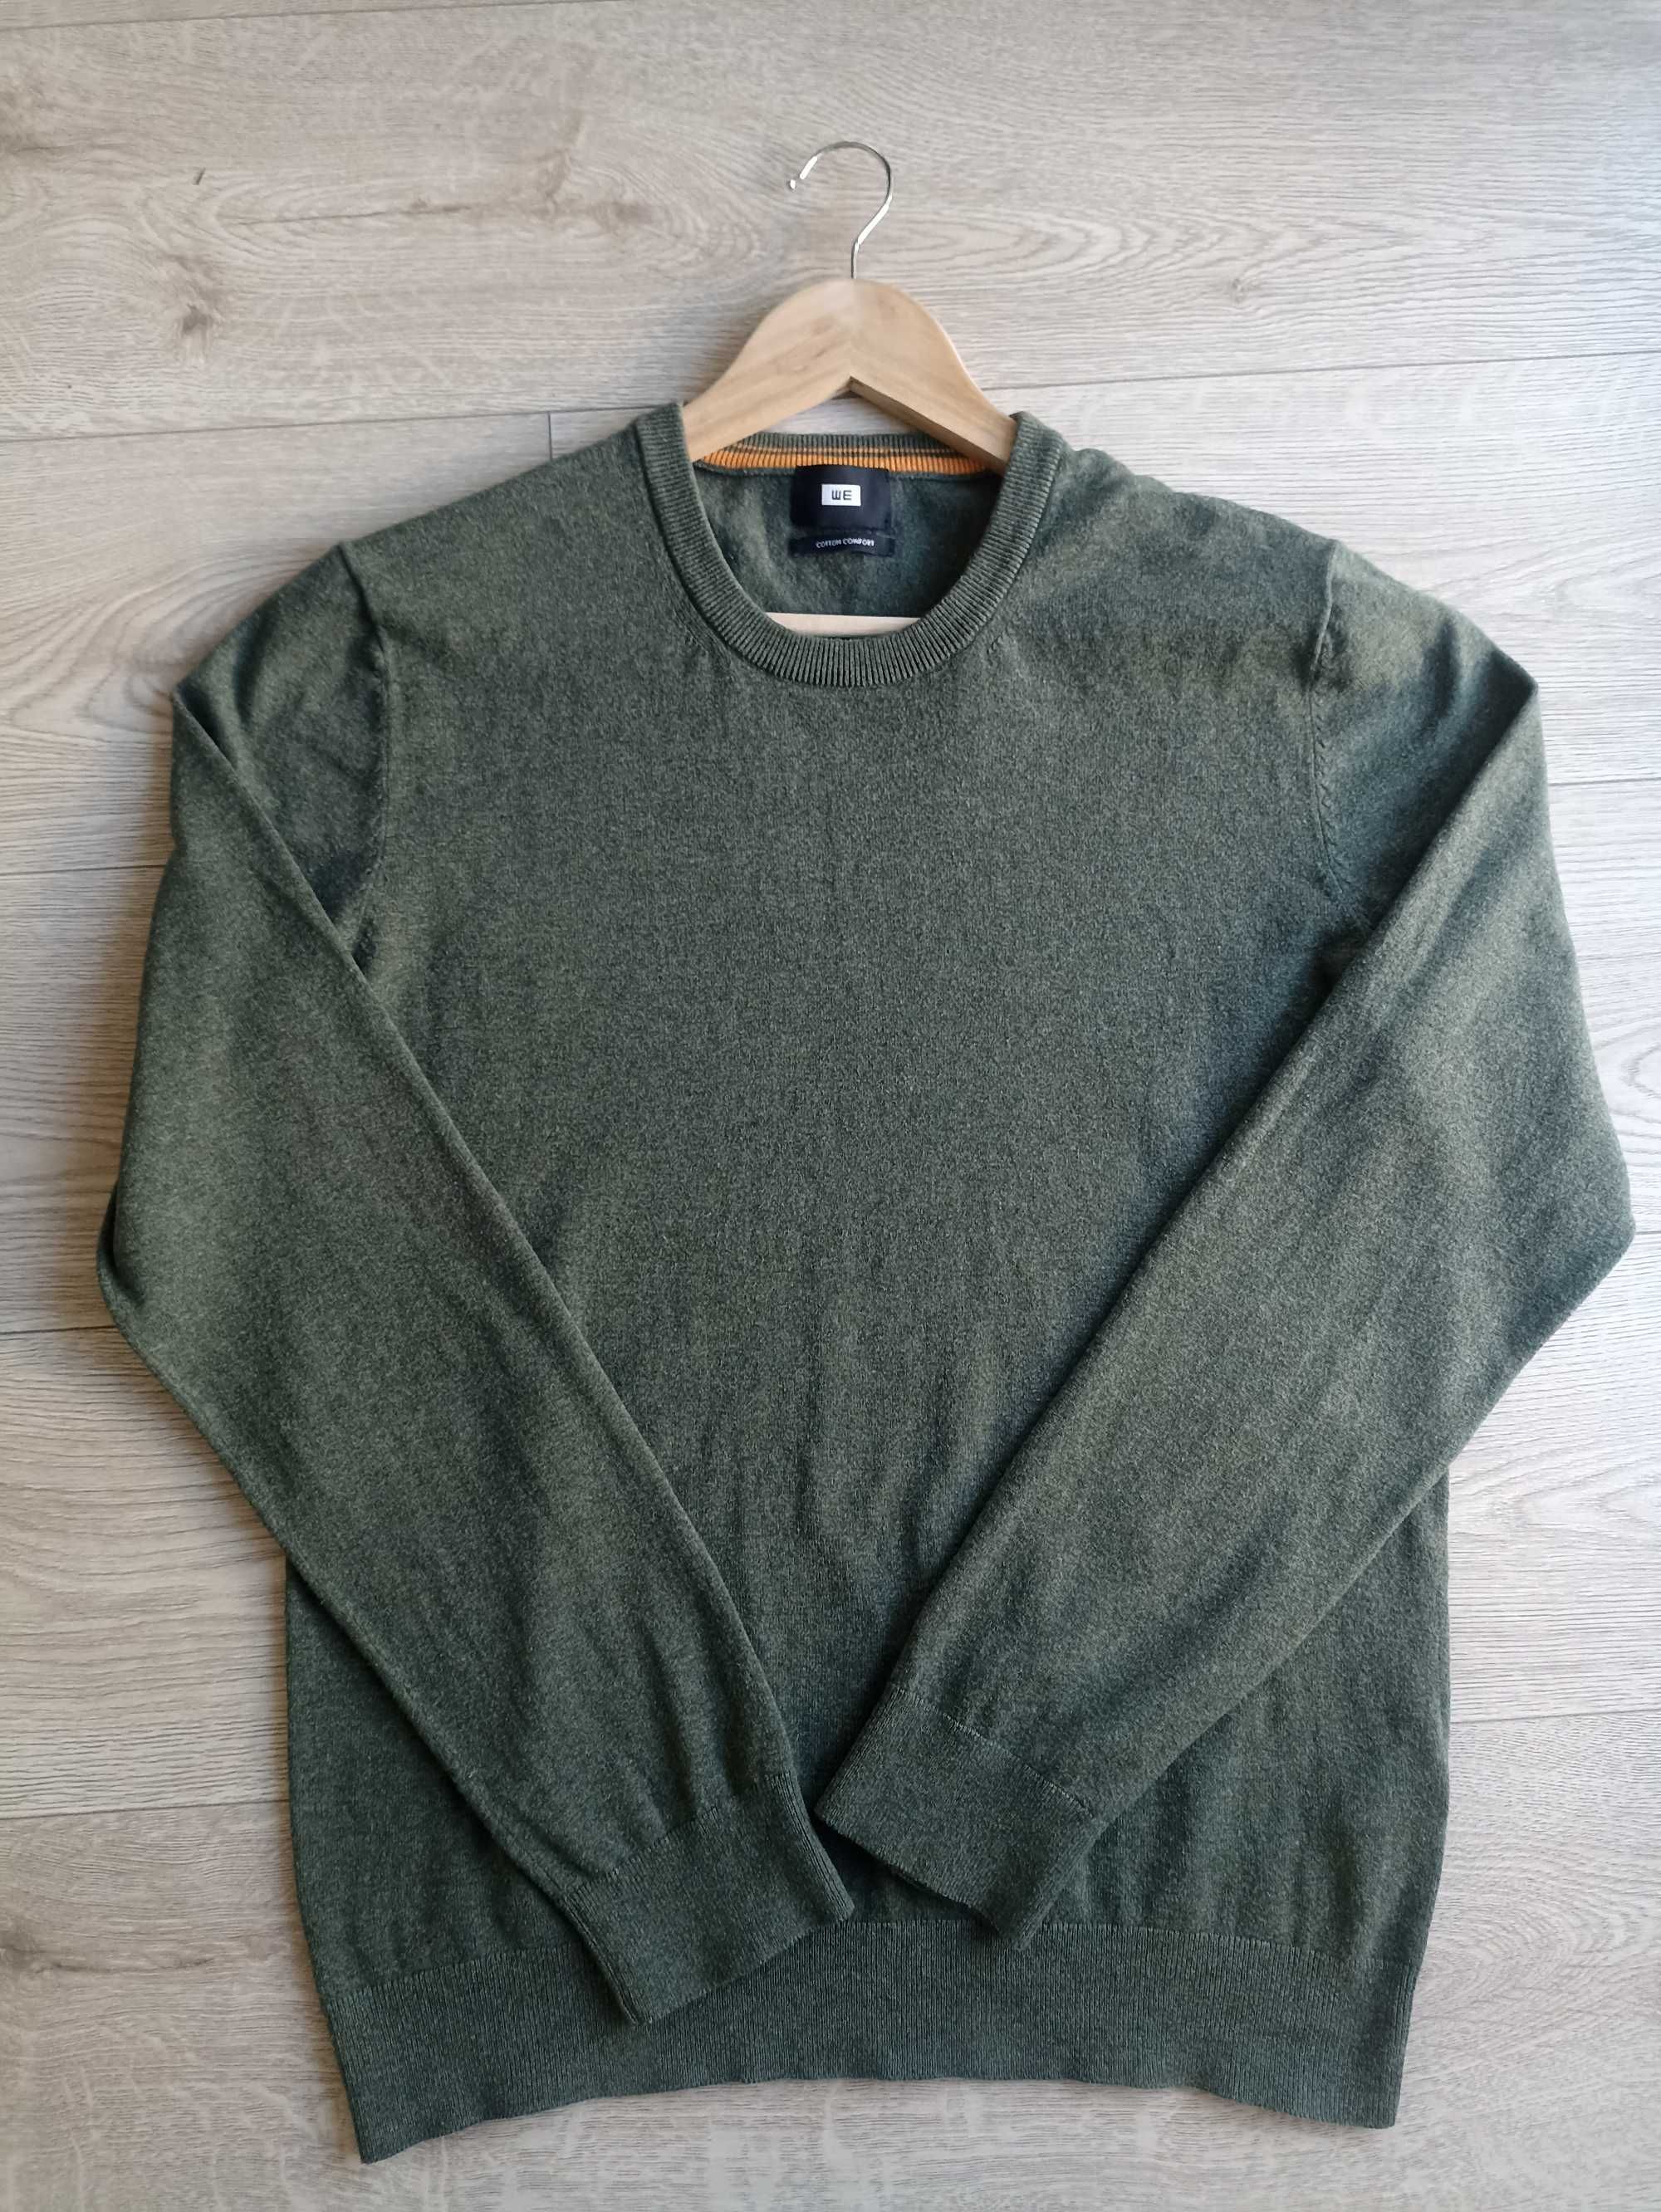 Męski sweter, WE, rozmiar L, w stanie idealnym